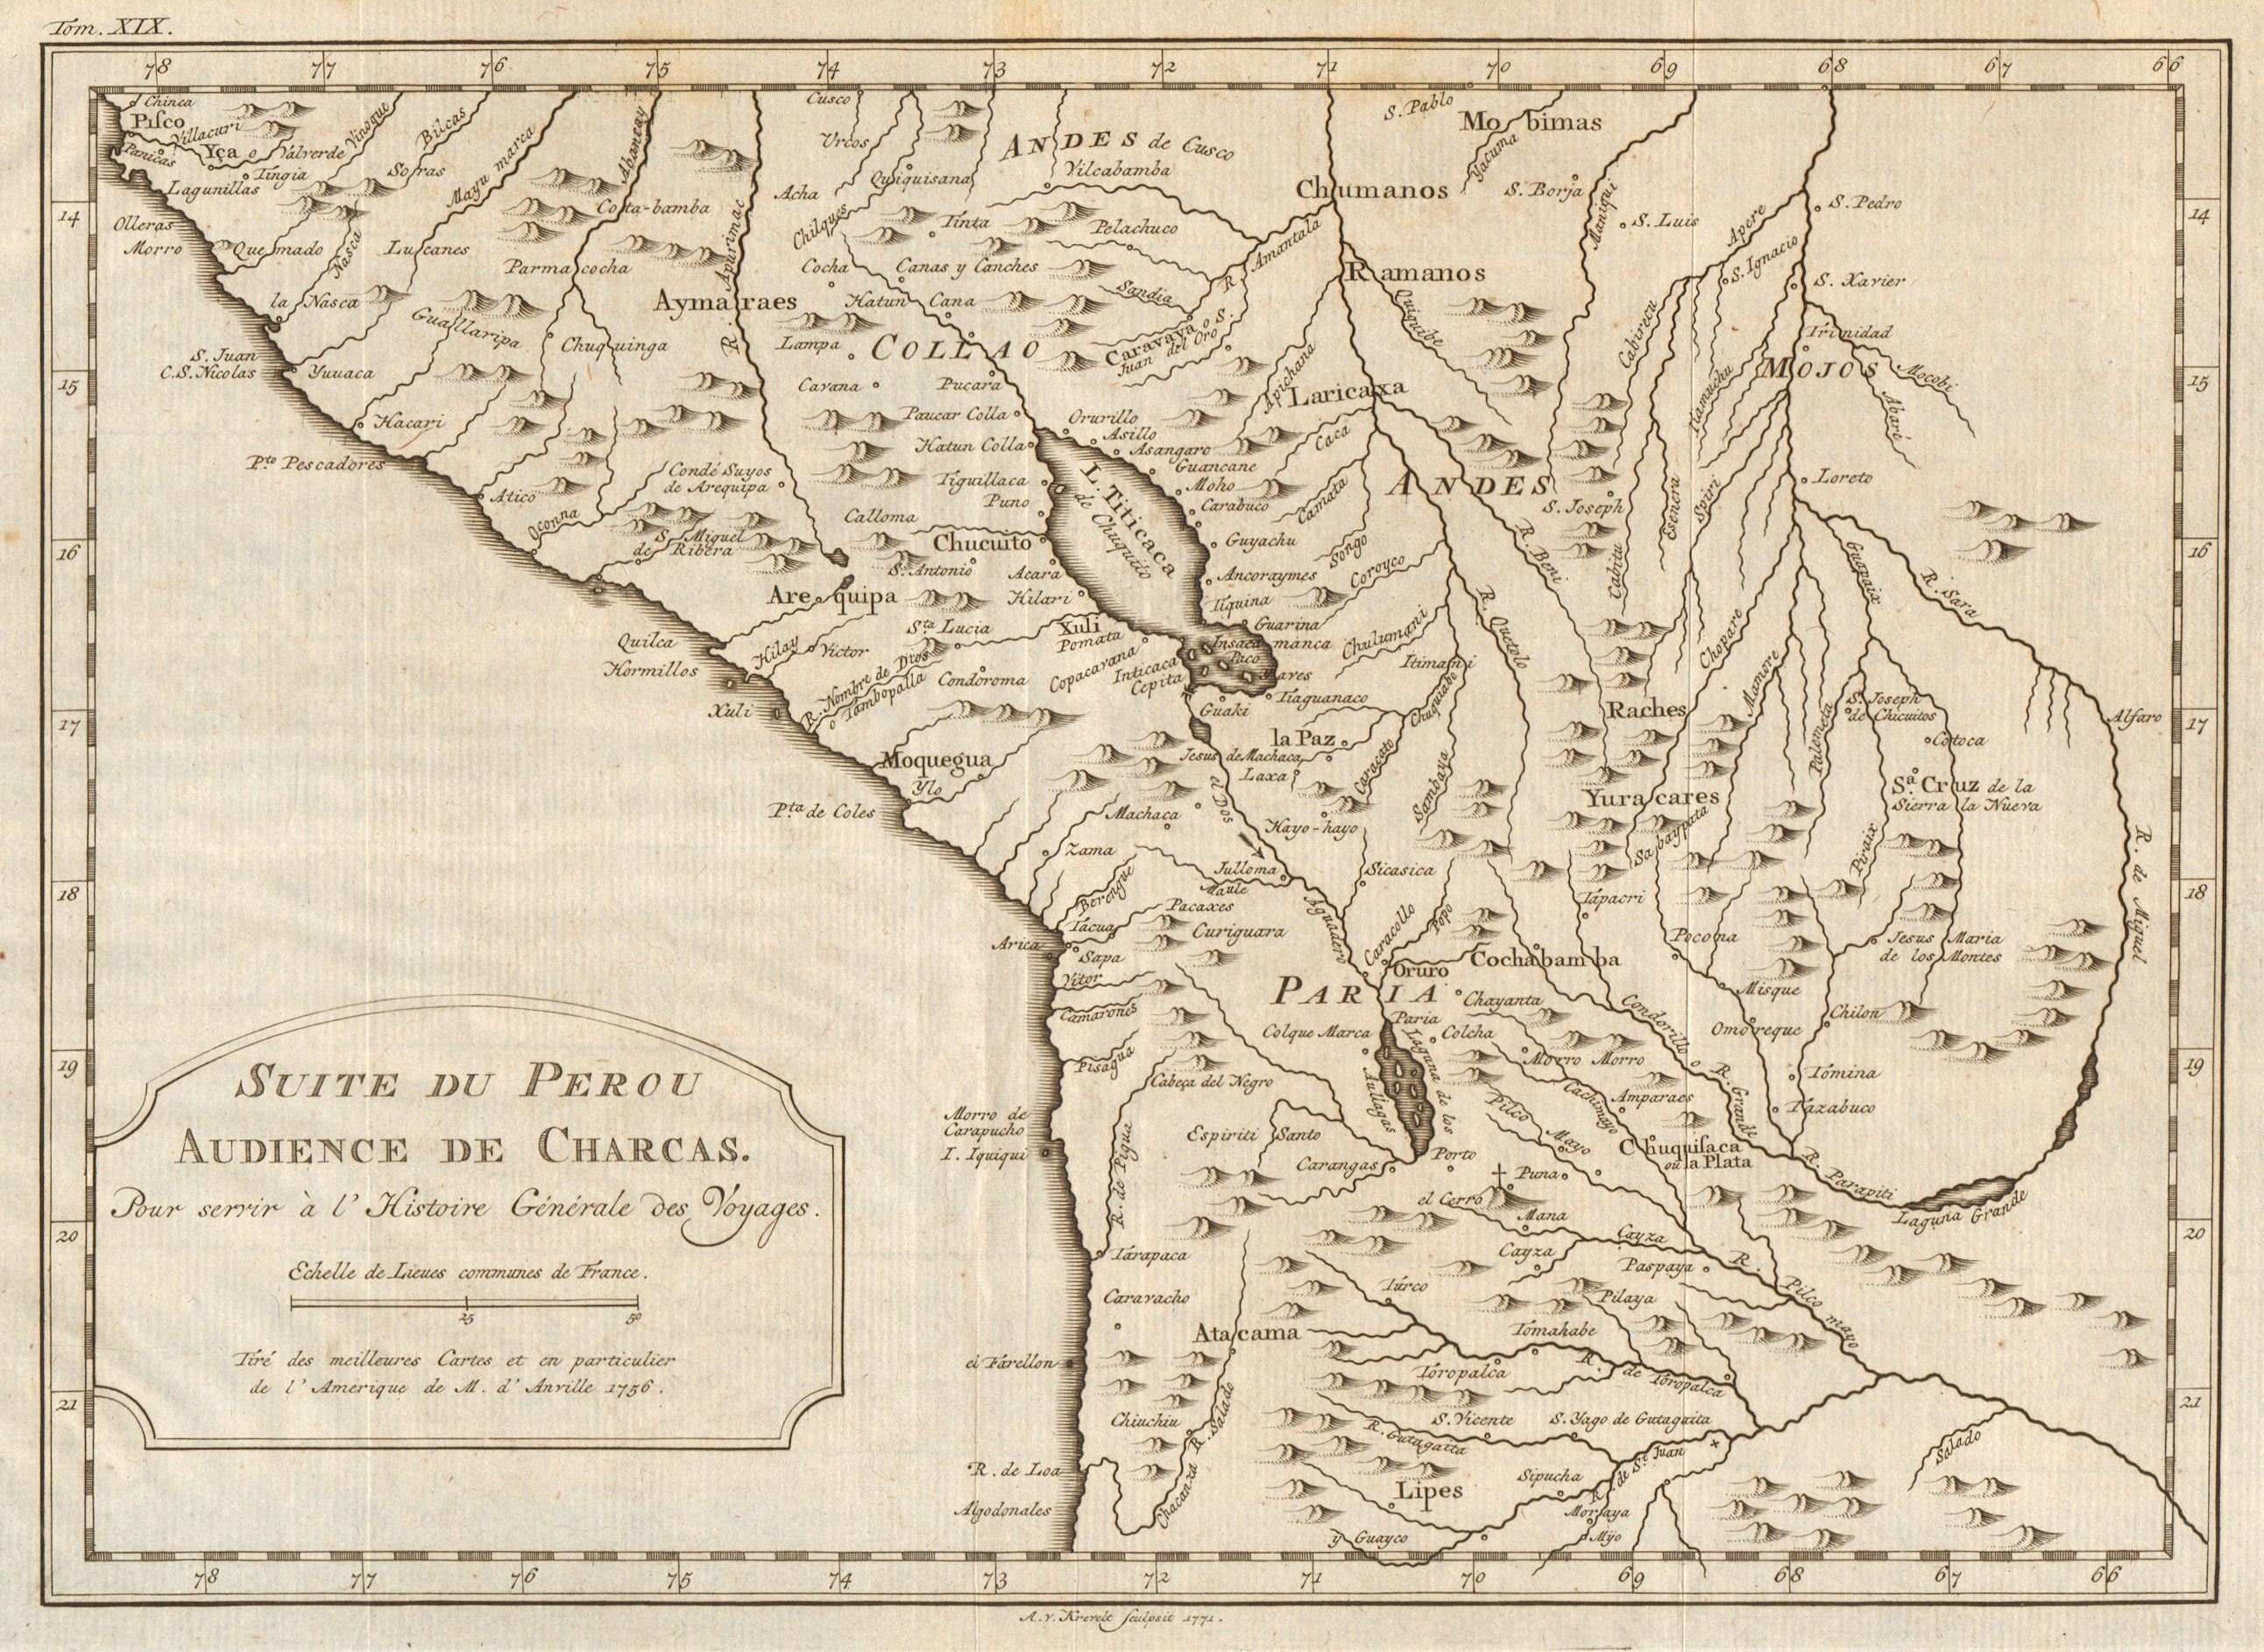 Associate Product 'Suite du Perou. Audience de Charcas'. Bolivia Peru.  BELLIN/SCHLEY 1772 map